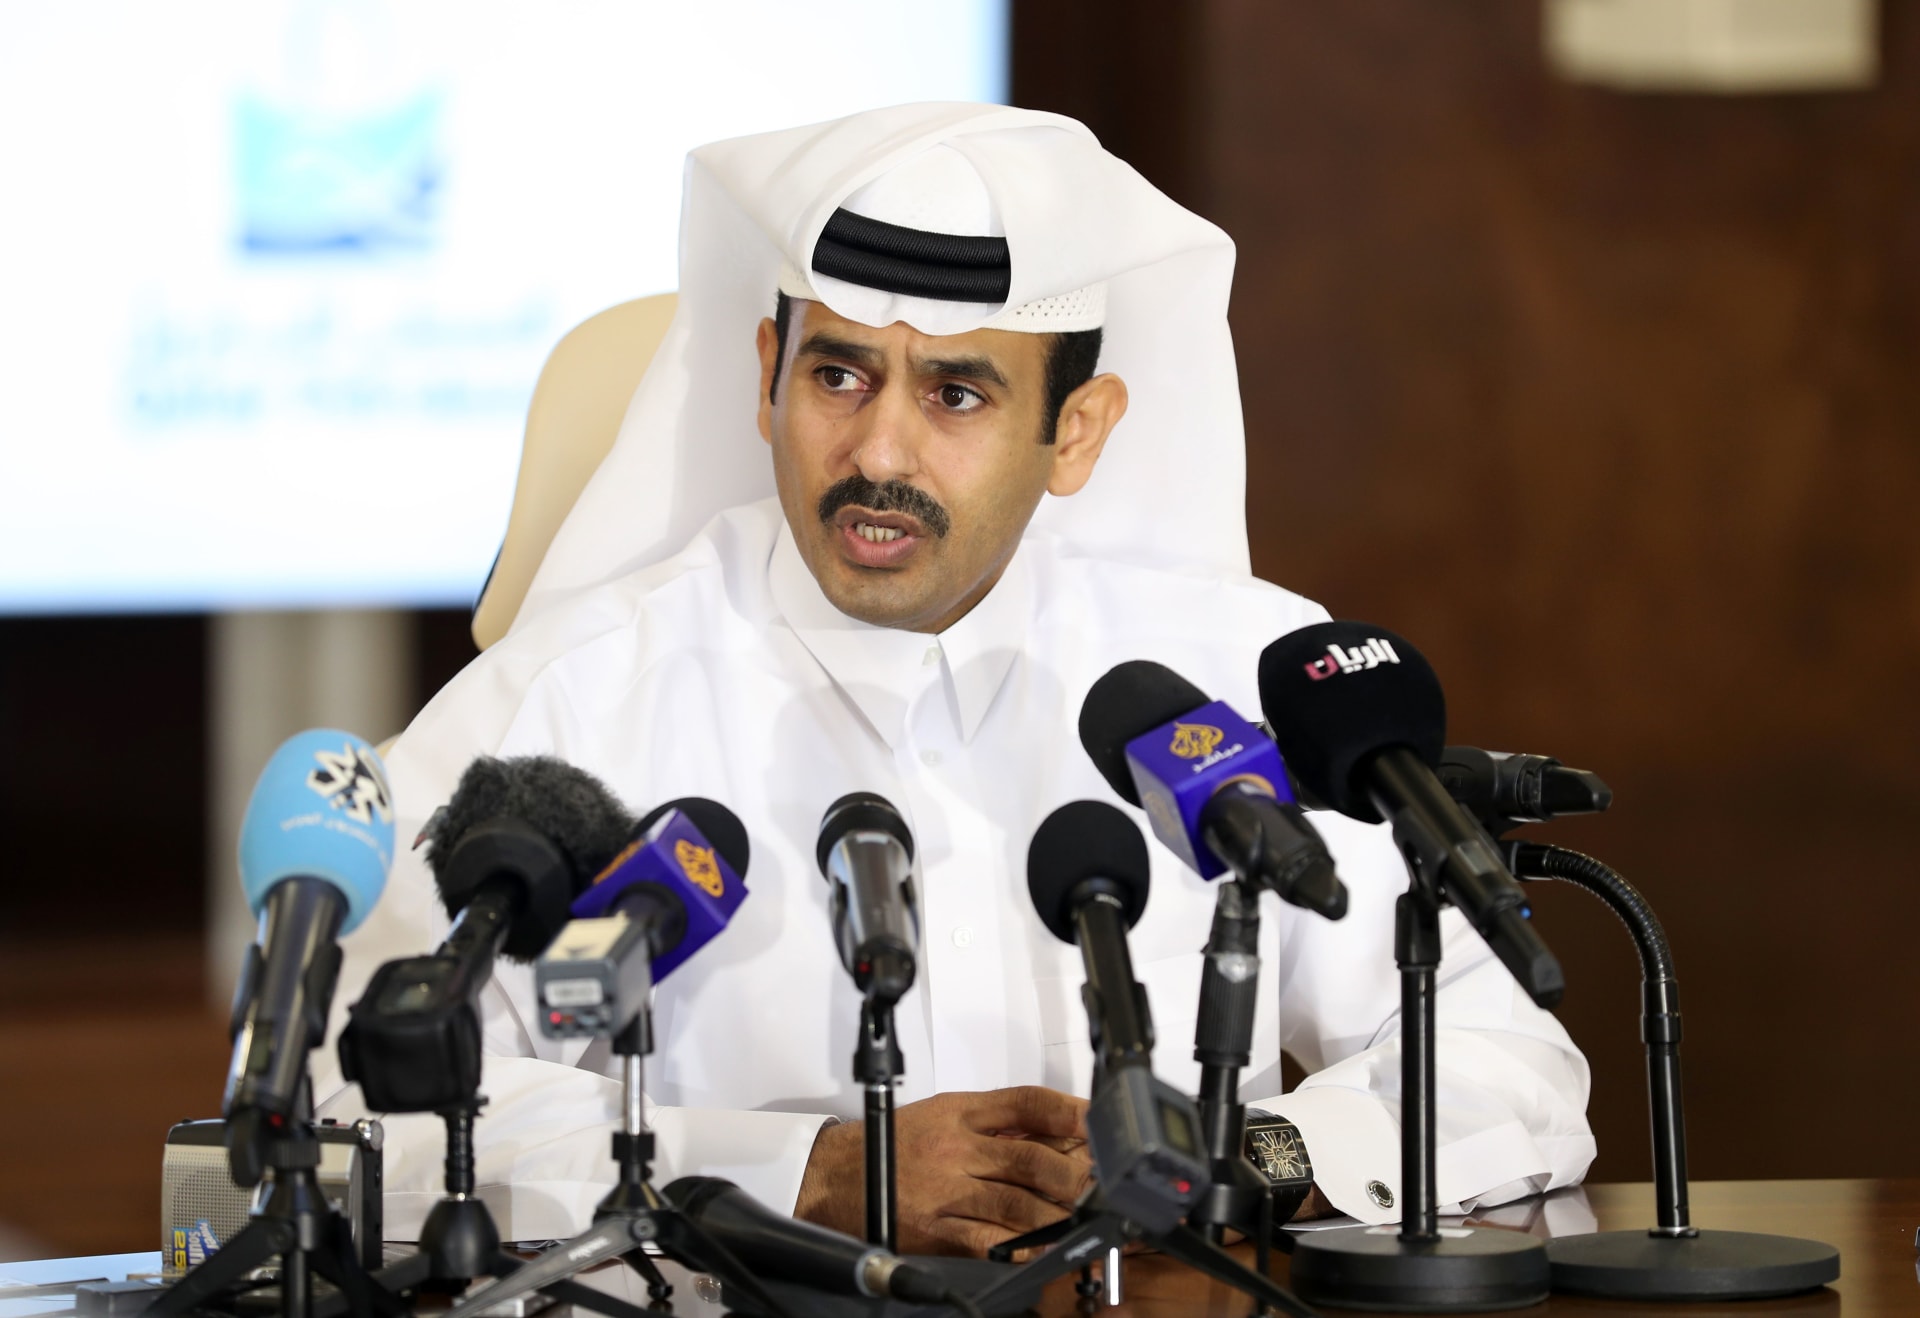 قطر للبترول: سنرفع إنتاج الغاز المسال إلى 100 مليون طن سنوياً.. وسيعزز ذلك موارد الدولة